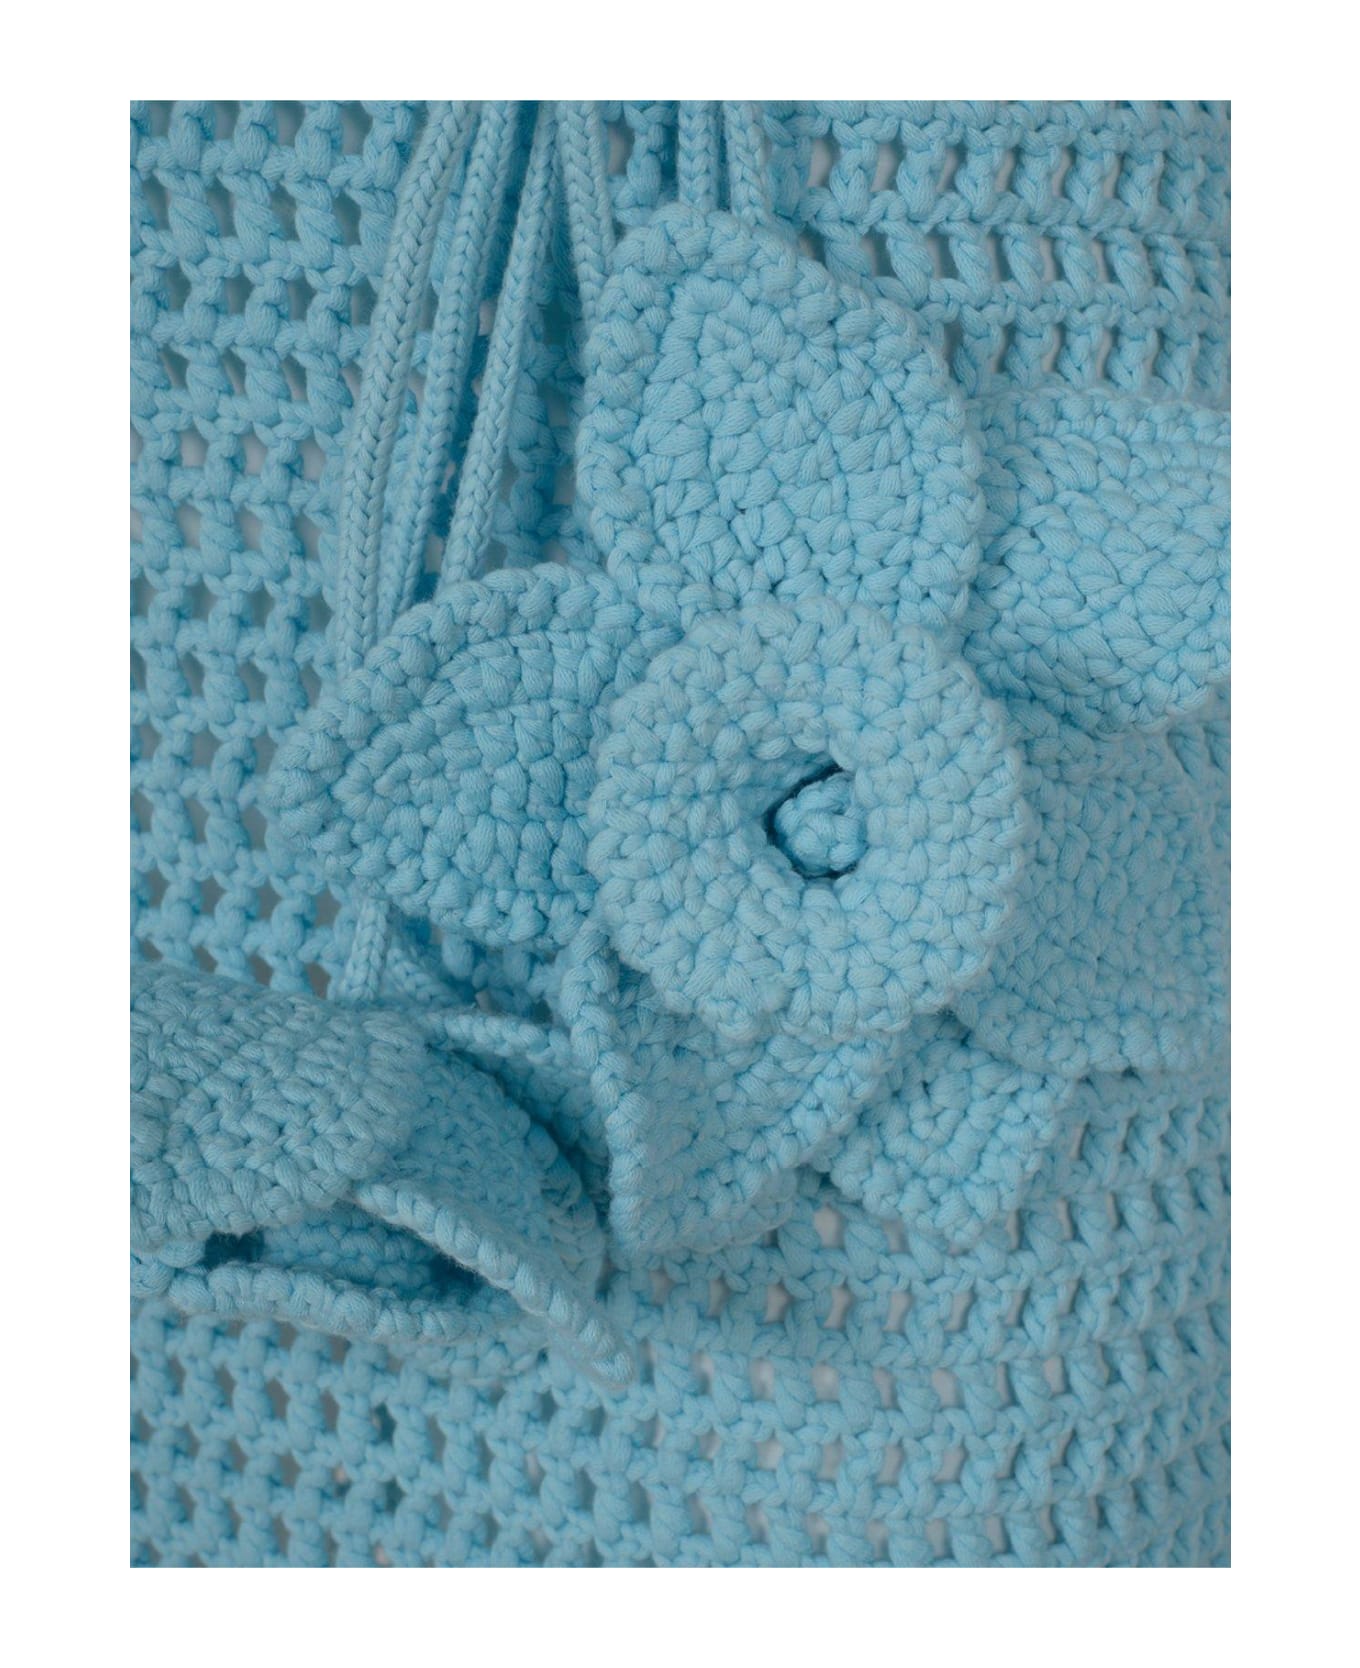 Burberry Crochet-knit Belted-waist Sleeveless Dress - B6004 ワンピース＆ドレス